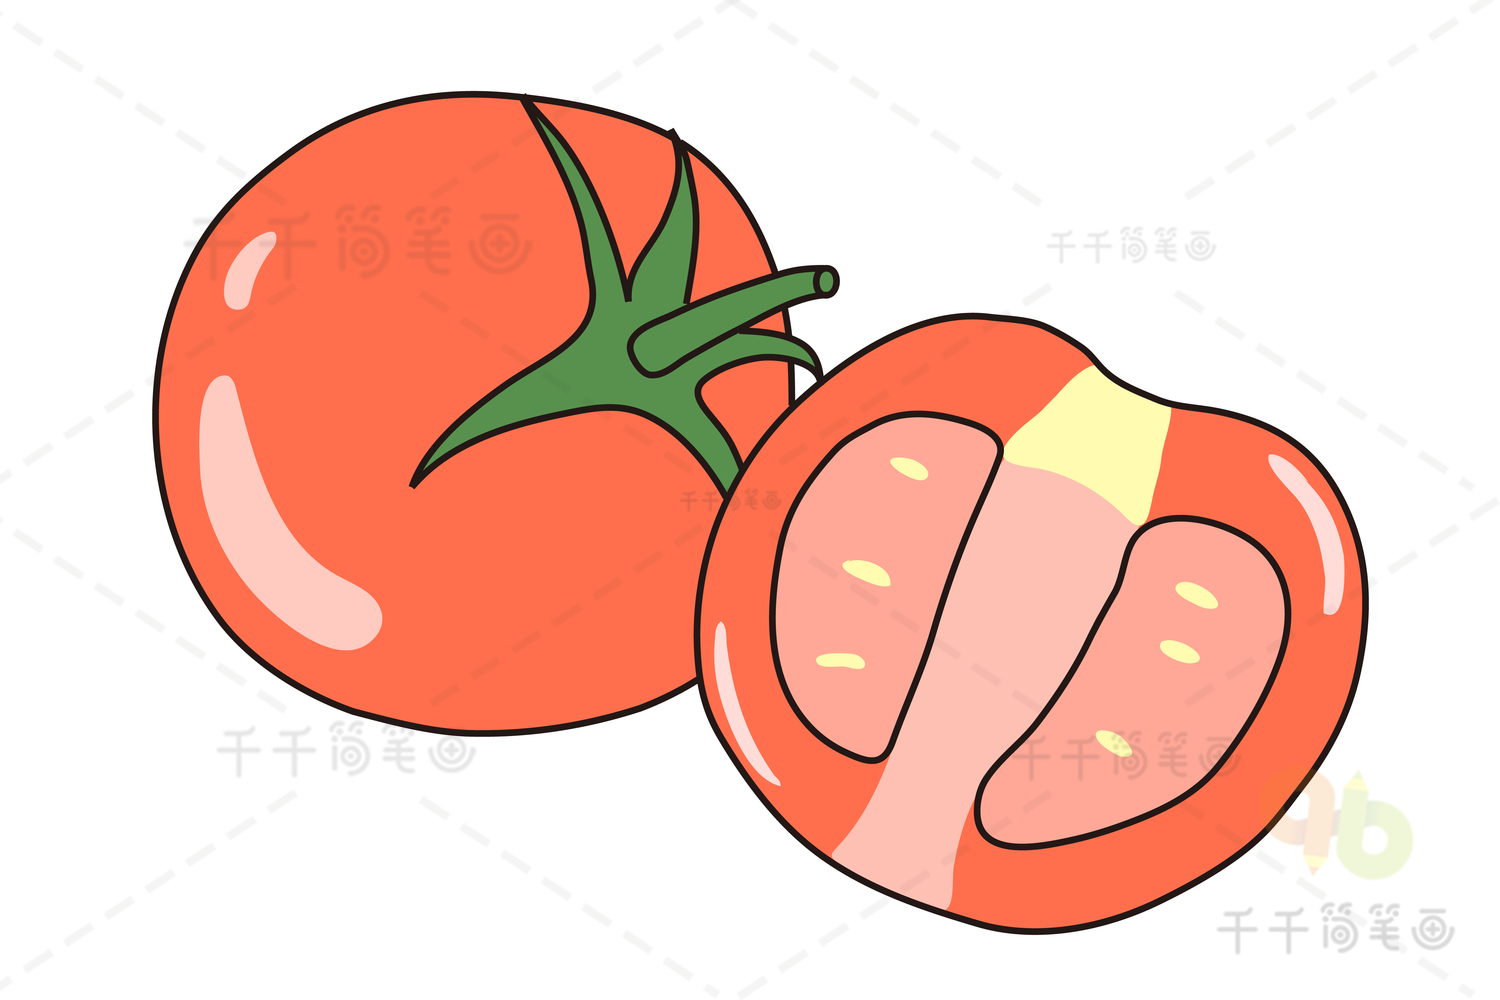 简笔西红柿的画法图片